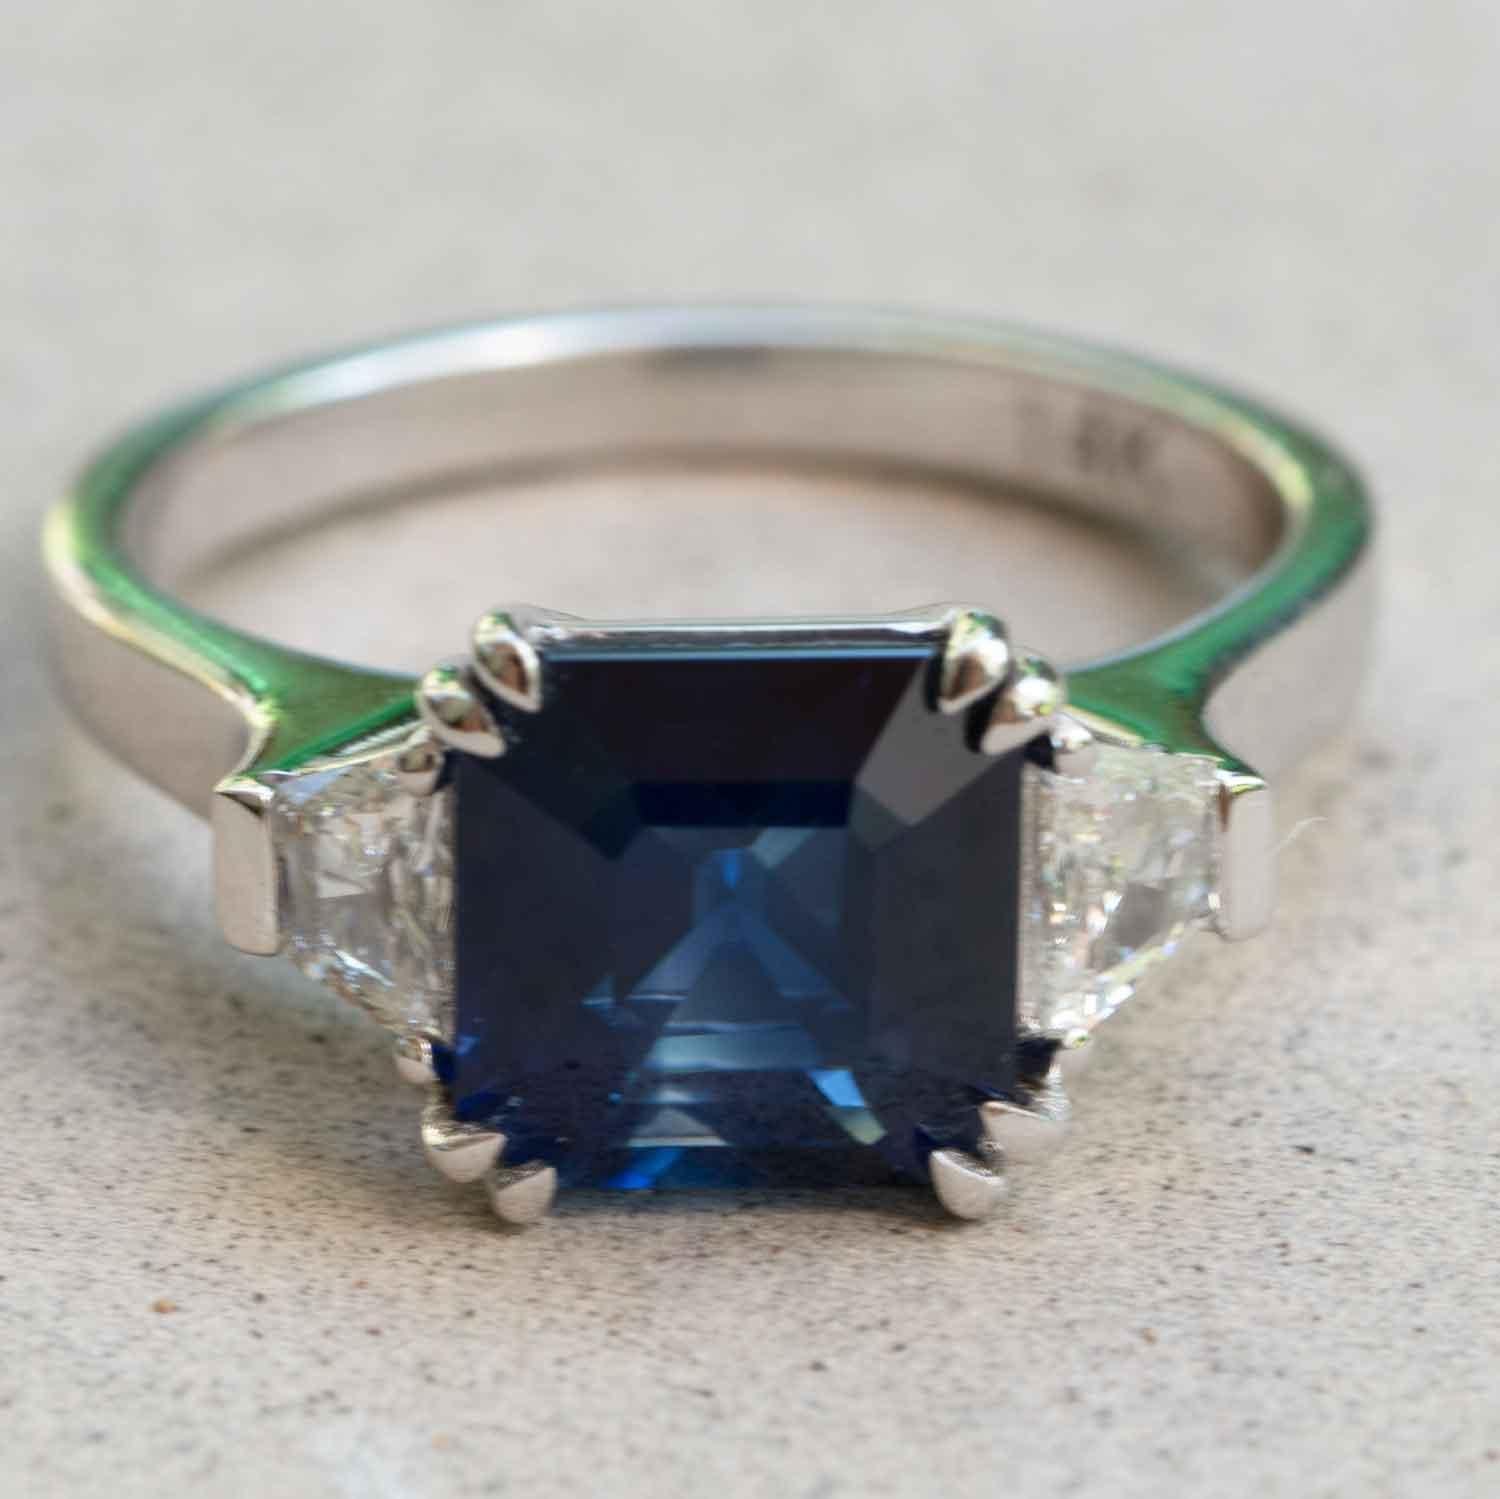 Diese atemberaubende Kombination aus einem tiefblauen, natürlichen Saphir und funkelnden weißen Diamanten ist wie geschaffen für die Hand einer Prinzessin. Ein 2,60 Karat schwerer Saphir bietet elegante Tiefe und Farbe, umgeben von 2 einzeln